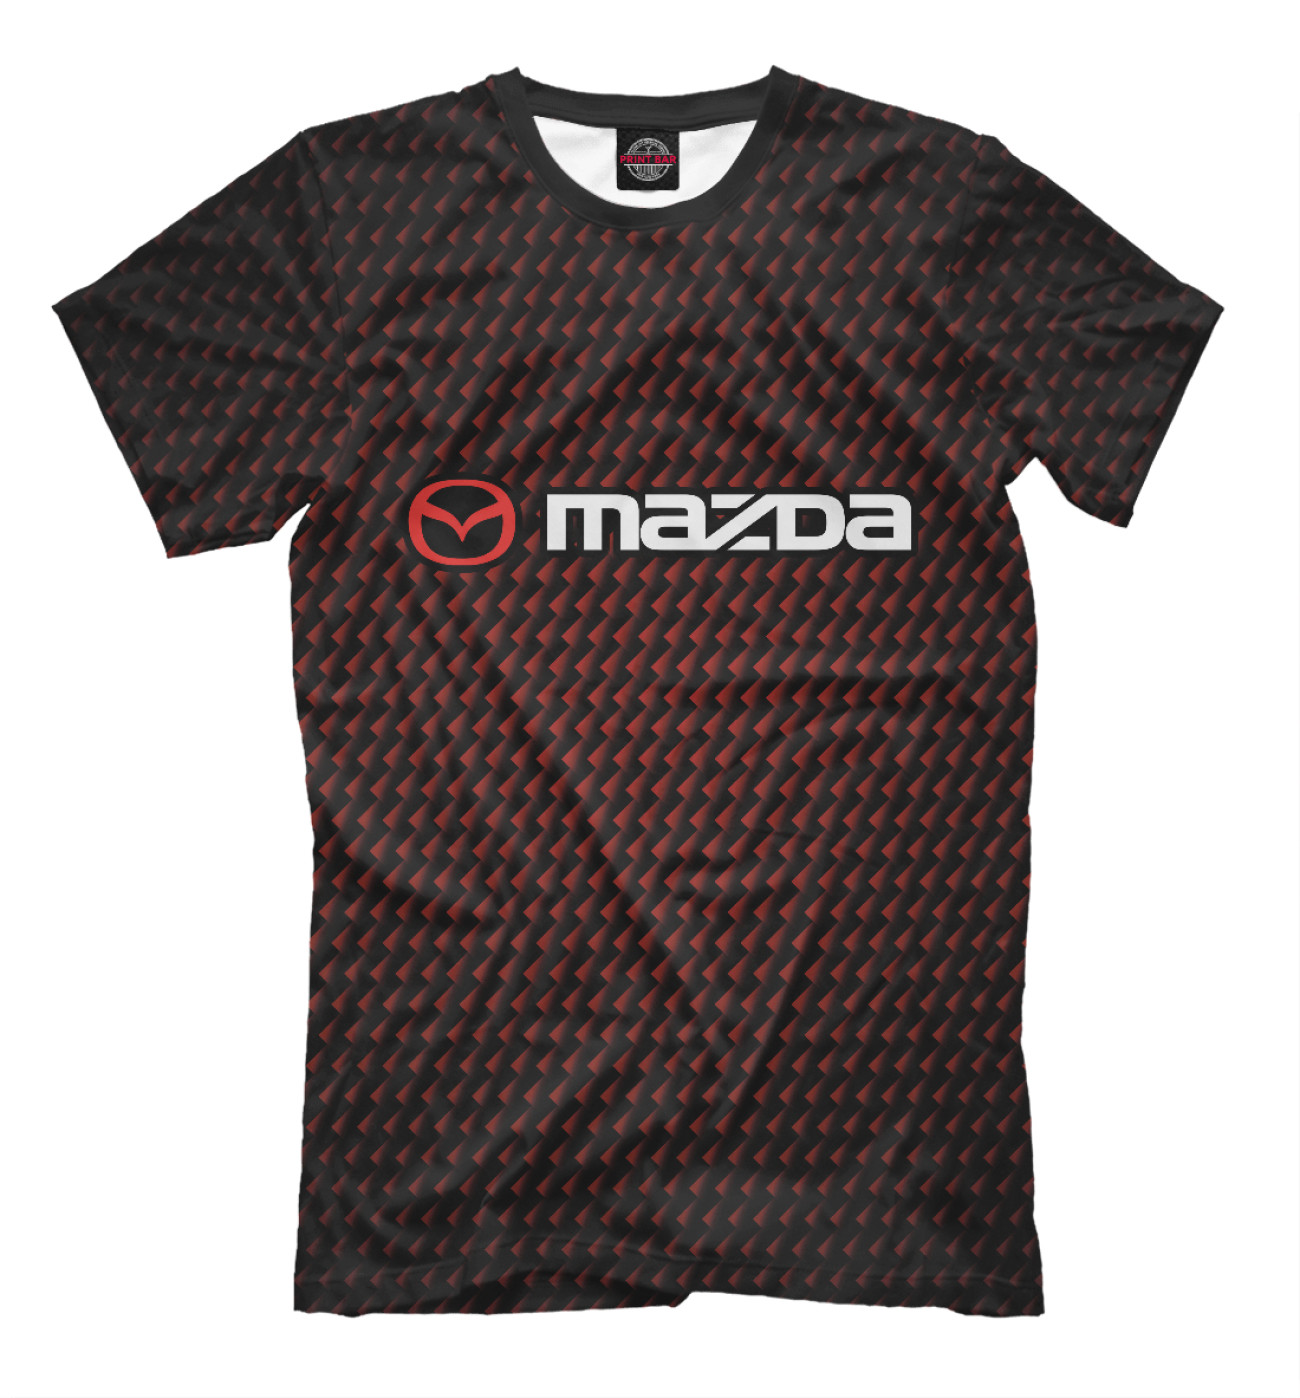 Мужская Футболка Mazda / Мазда, артикул: MZD-119006-fut-2